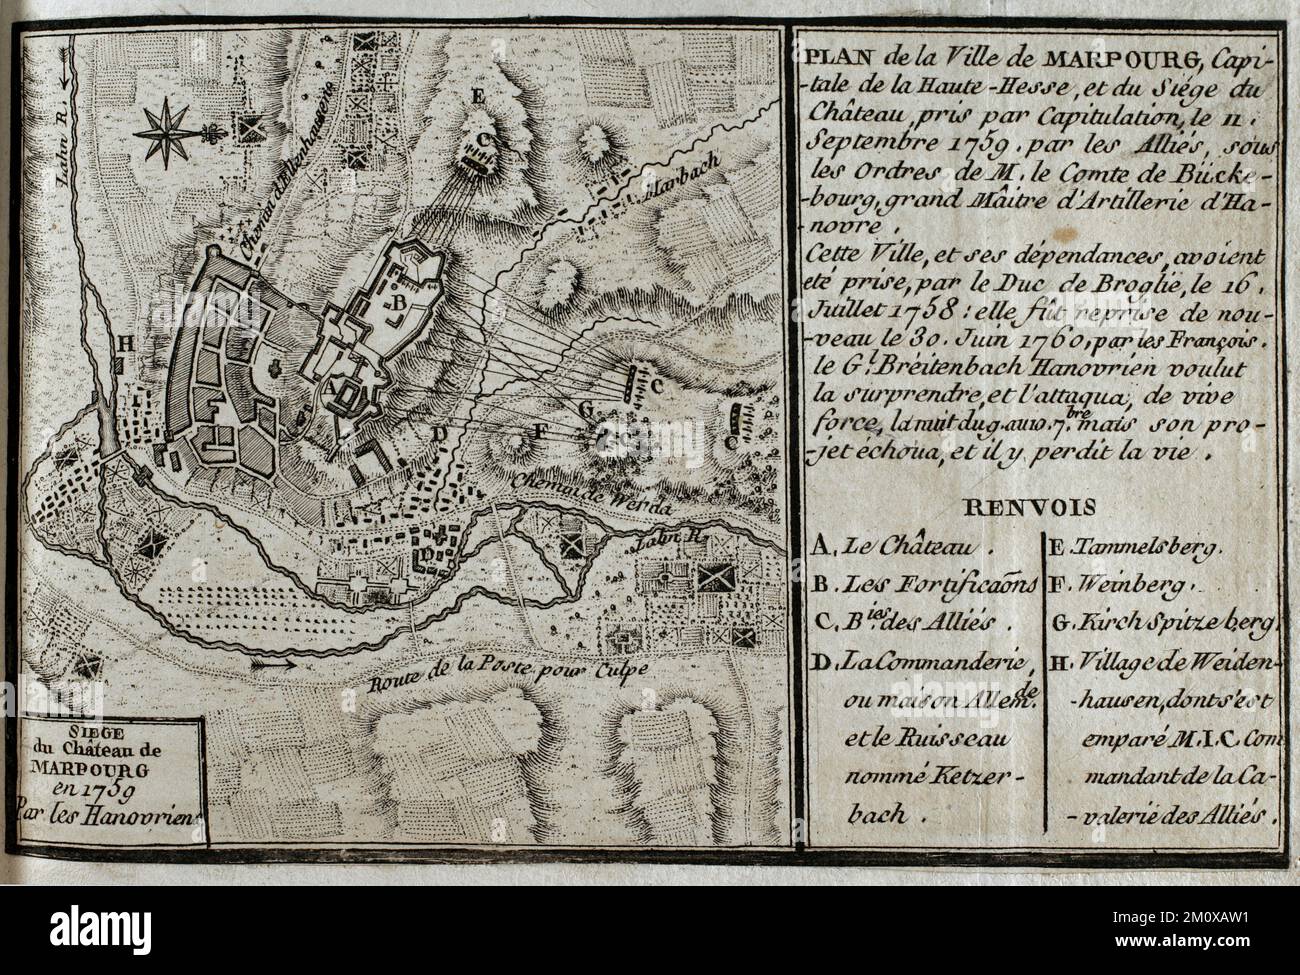 Guerra dei sette anni (1756-1763). Mappa di Marburg e assedio del castello, 1759. Preso per capitolazione il 11 settembre 1759 dalle forze alleate sotto il comando del conte di Buckeburg. Marburg fu catturata dal Duca di Broglie il 16 luglio 1758, e fu nuovamente sequestrata dai francesi il 30 giugno 1760. Pubblicato nel 1765 dal cartografo Jean de Beaurain (1696-1771) come illustrazione della sua Grande carta della Germania, con gli eventi che si sono verificati durante la Guerra dei sette anni. Incisione e incisione. Edizione francese, 1765. Biblioteca storica militare di Barcellona (Biblioteca Histórico Militar de Barcel Foto Stock